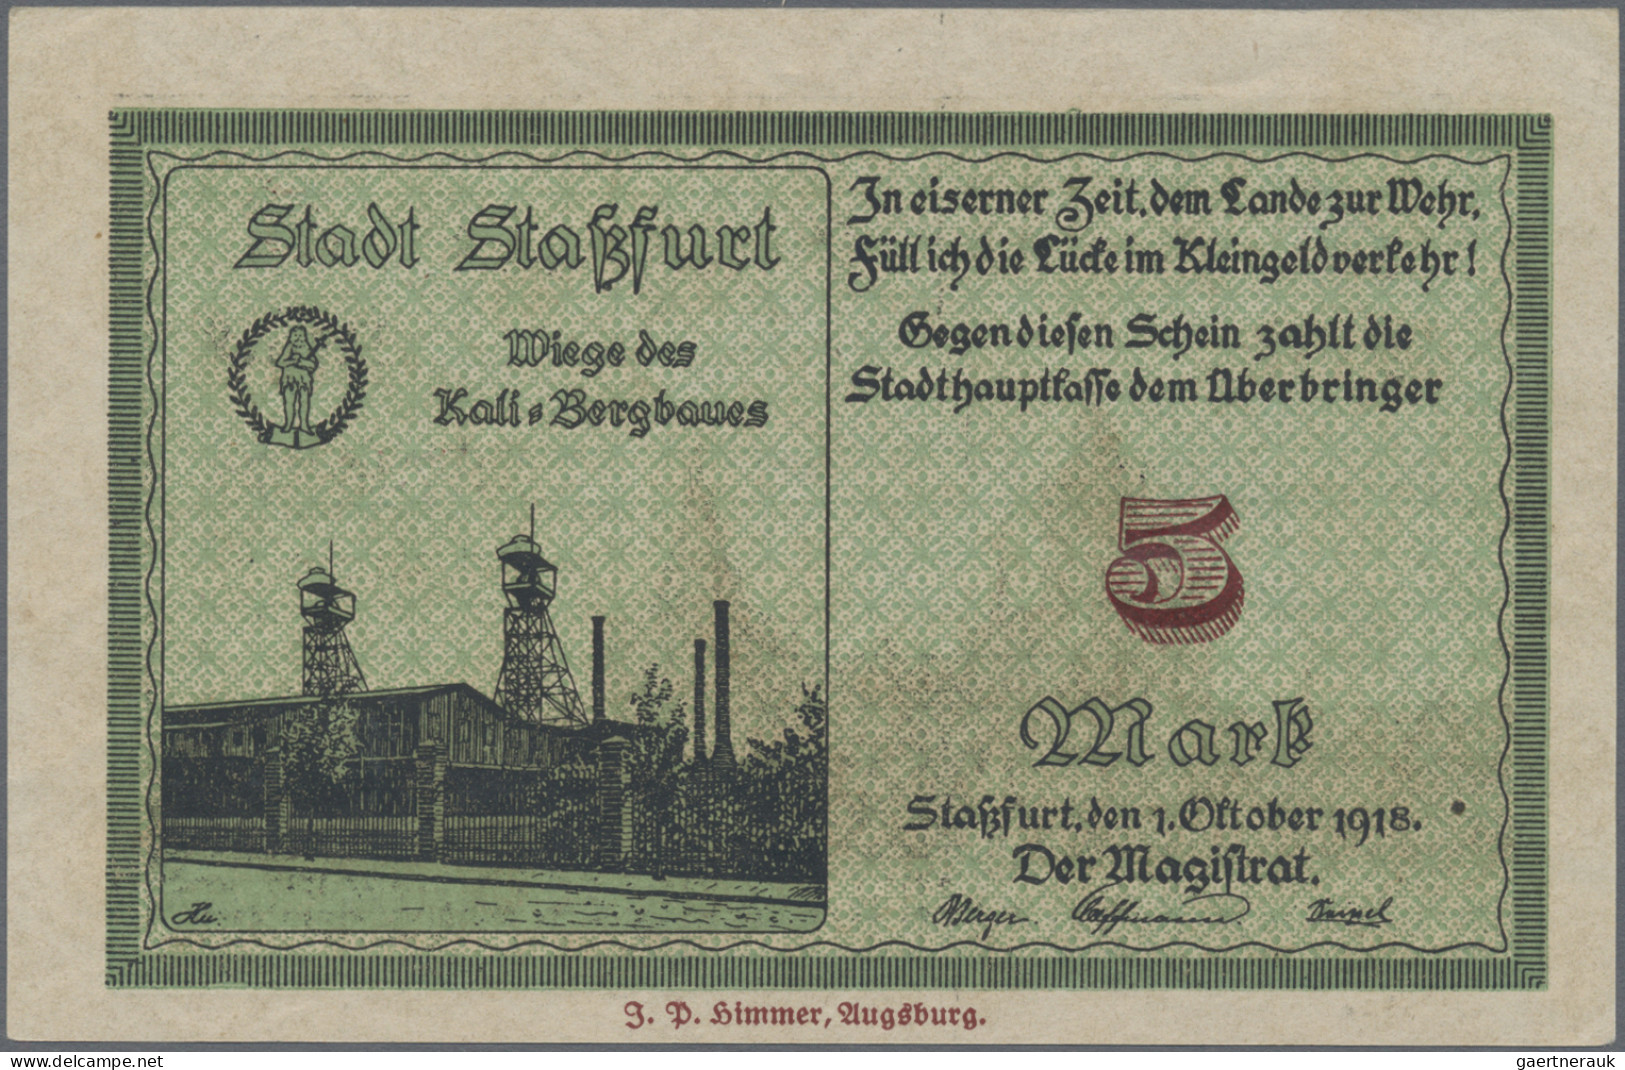 Deutschland - Deutsches Reich bis 1945: Lot mit etwa 100 Banknoten, dabei etwas